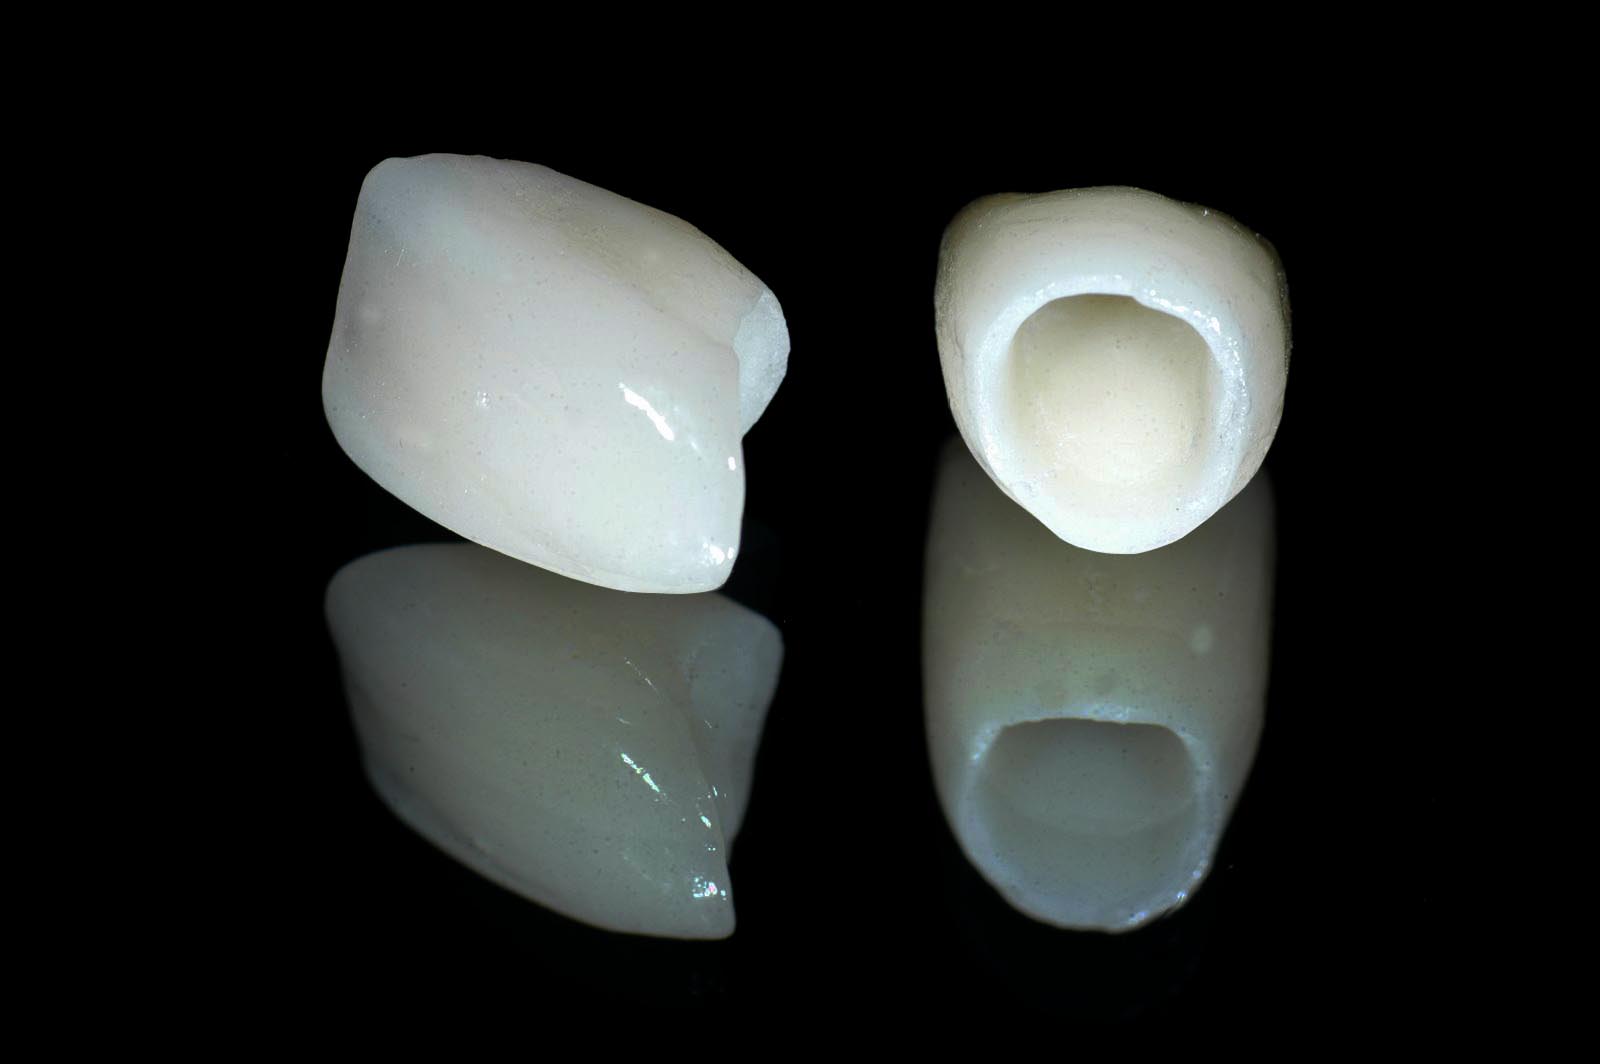 Những điều cần biết về bọc răng sứ Cercon HT